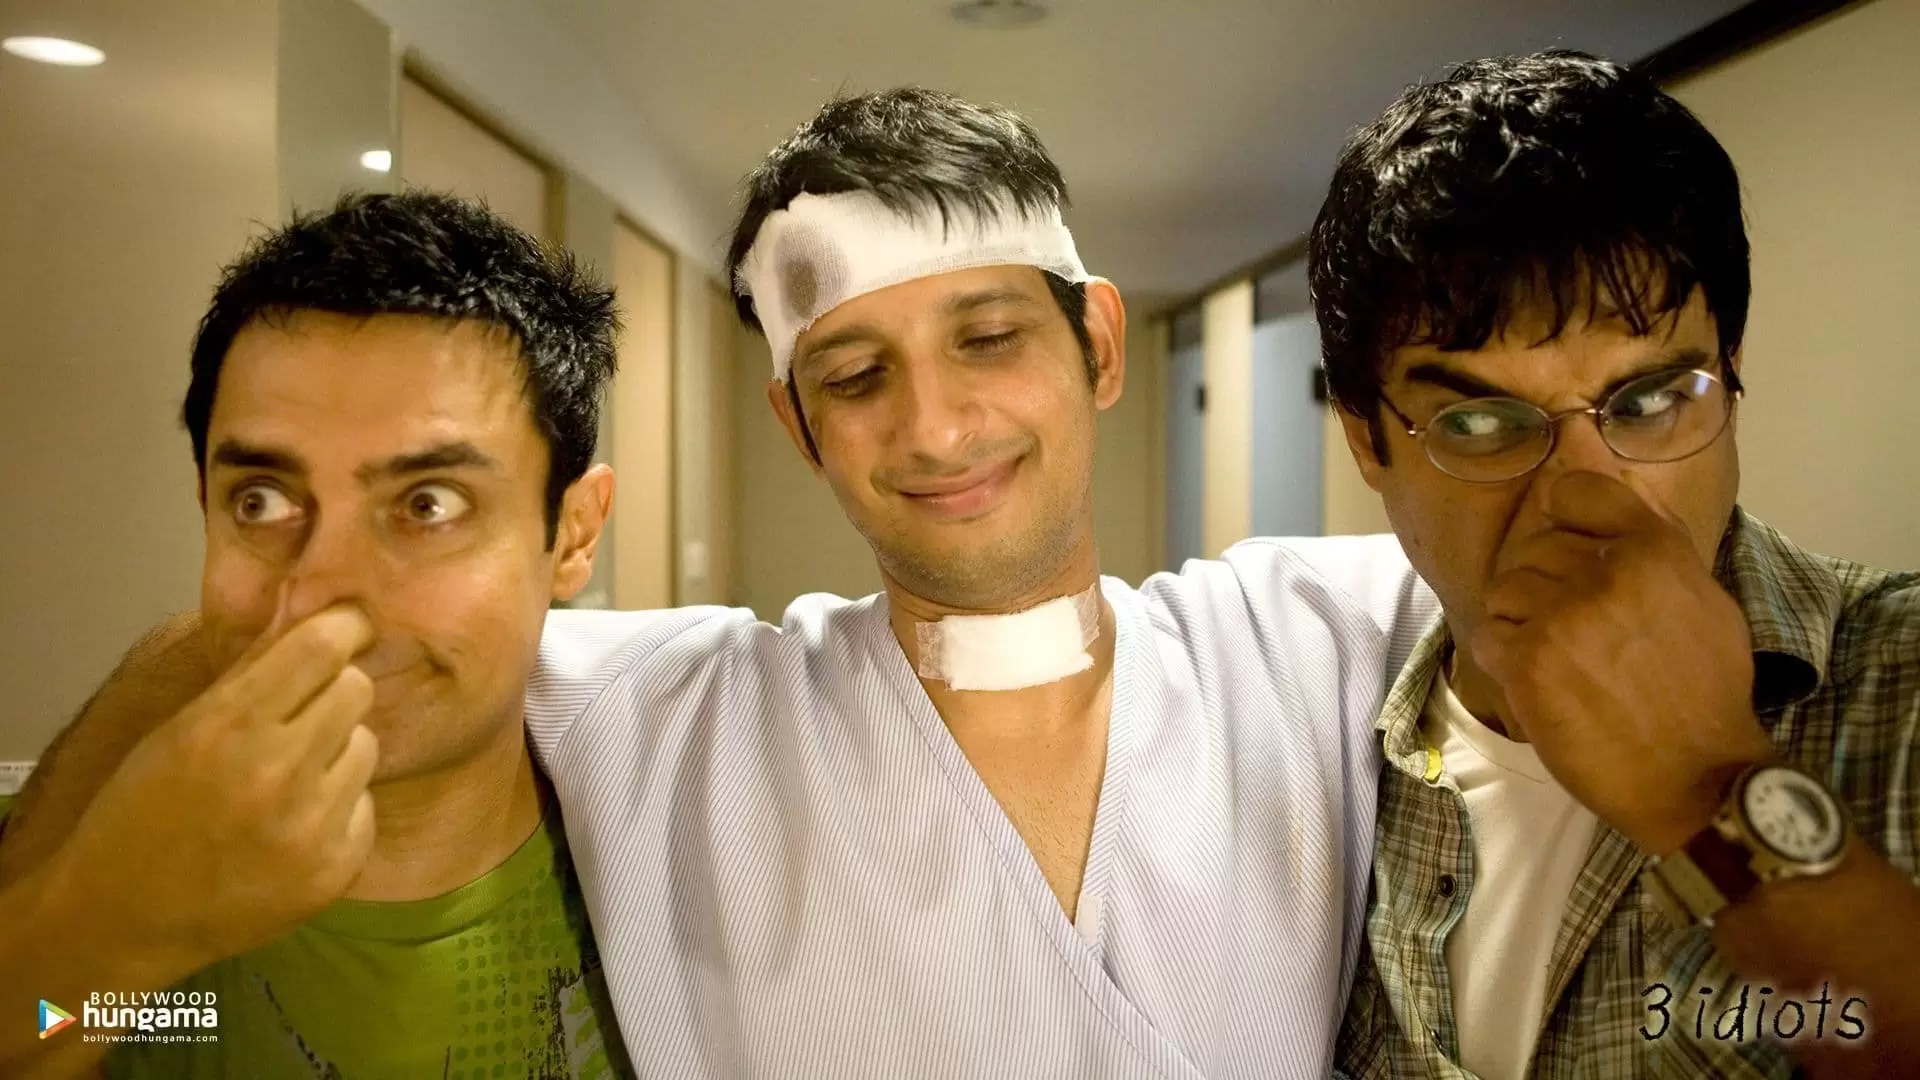 دانلود فیلم Idiots 3 2009 (سه احمق) با زیرنویس فارسی و تماشای آنلاین